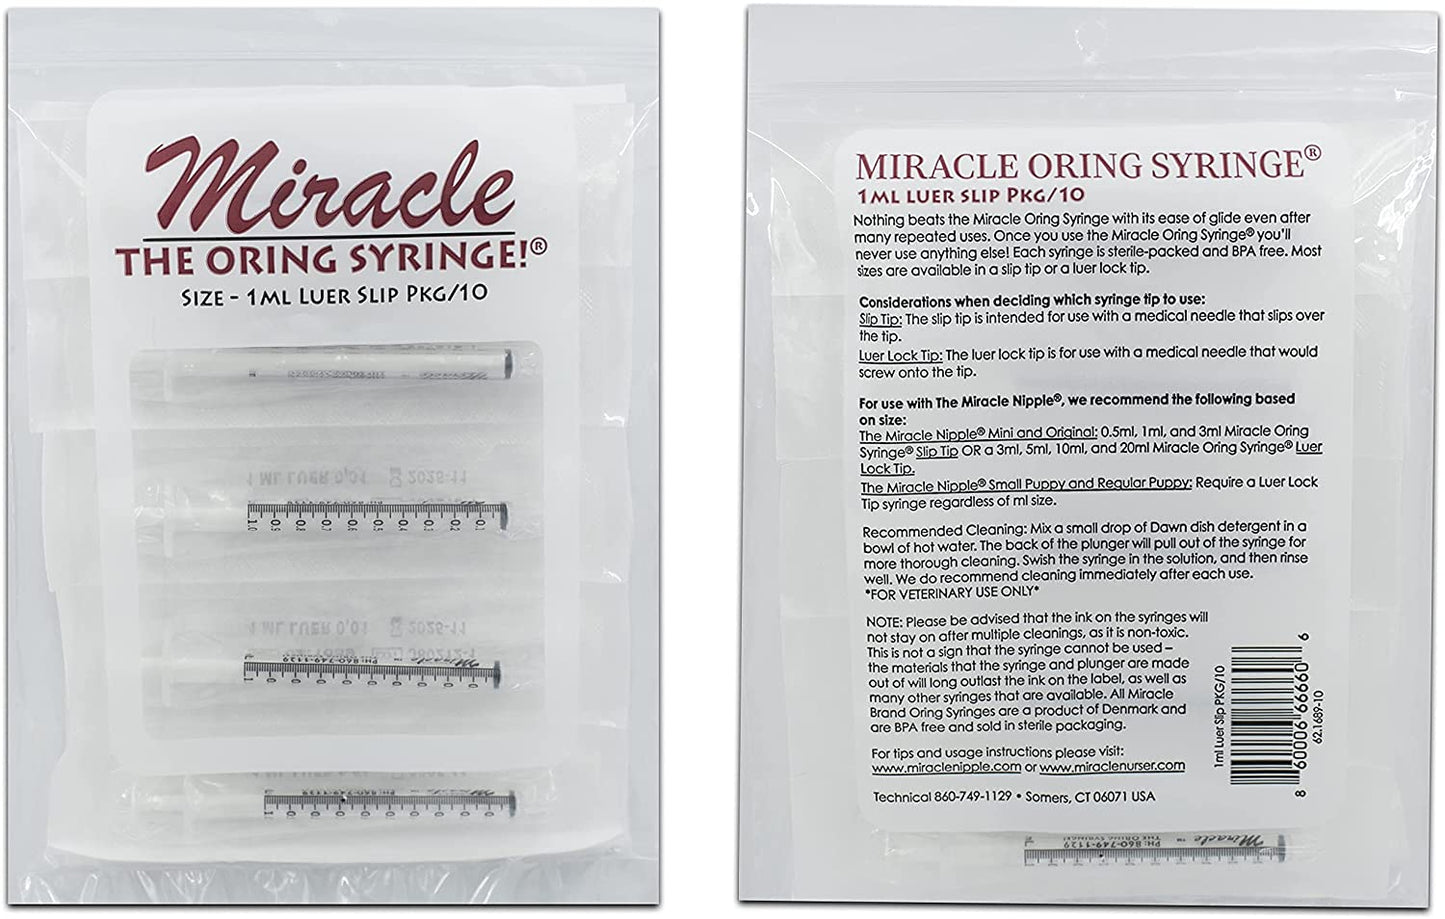 1 ml Miracle Brand Oring Syringe Pkg/10